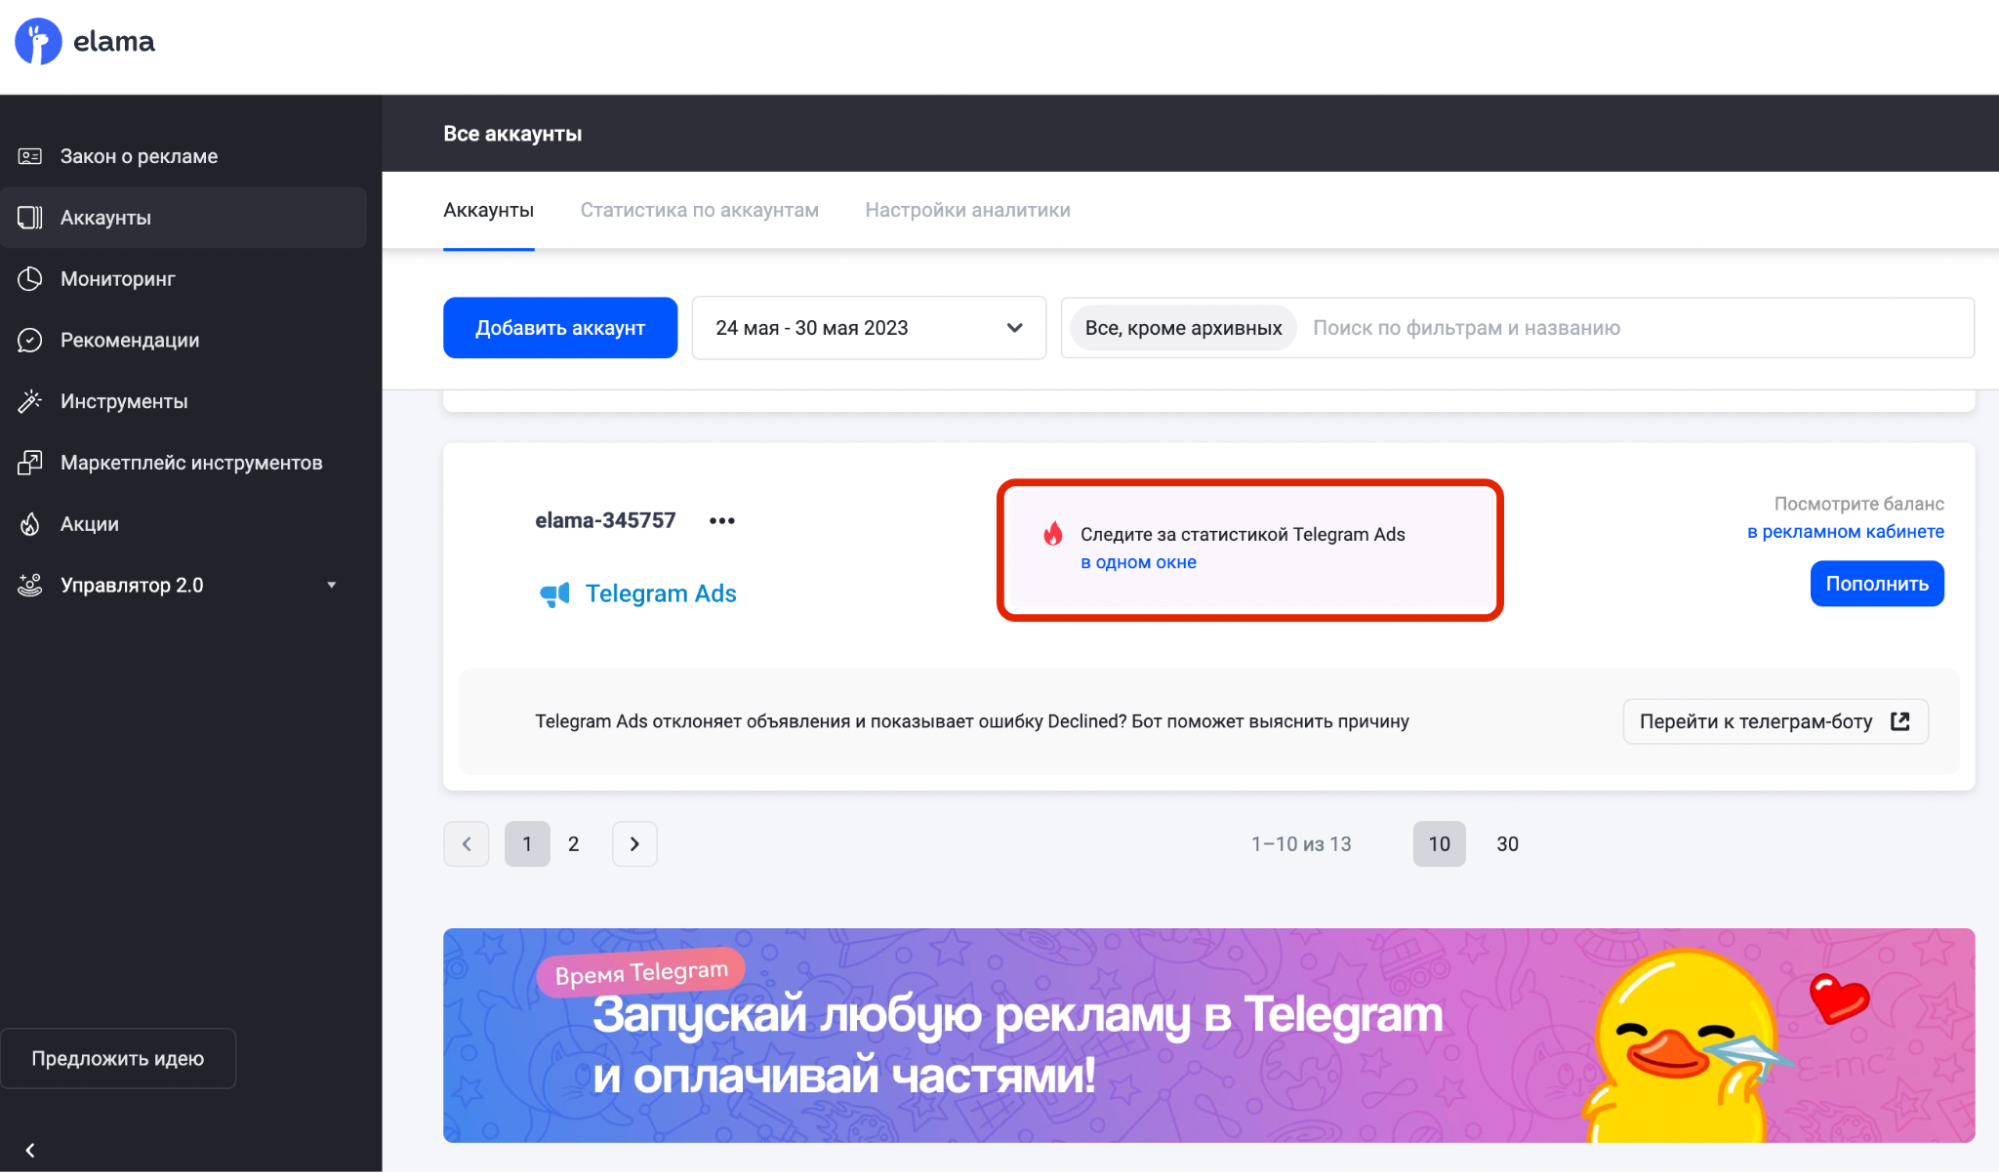 Telegram Ads с eLama